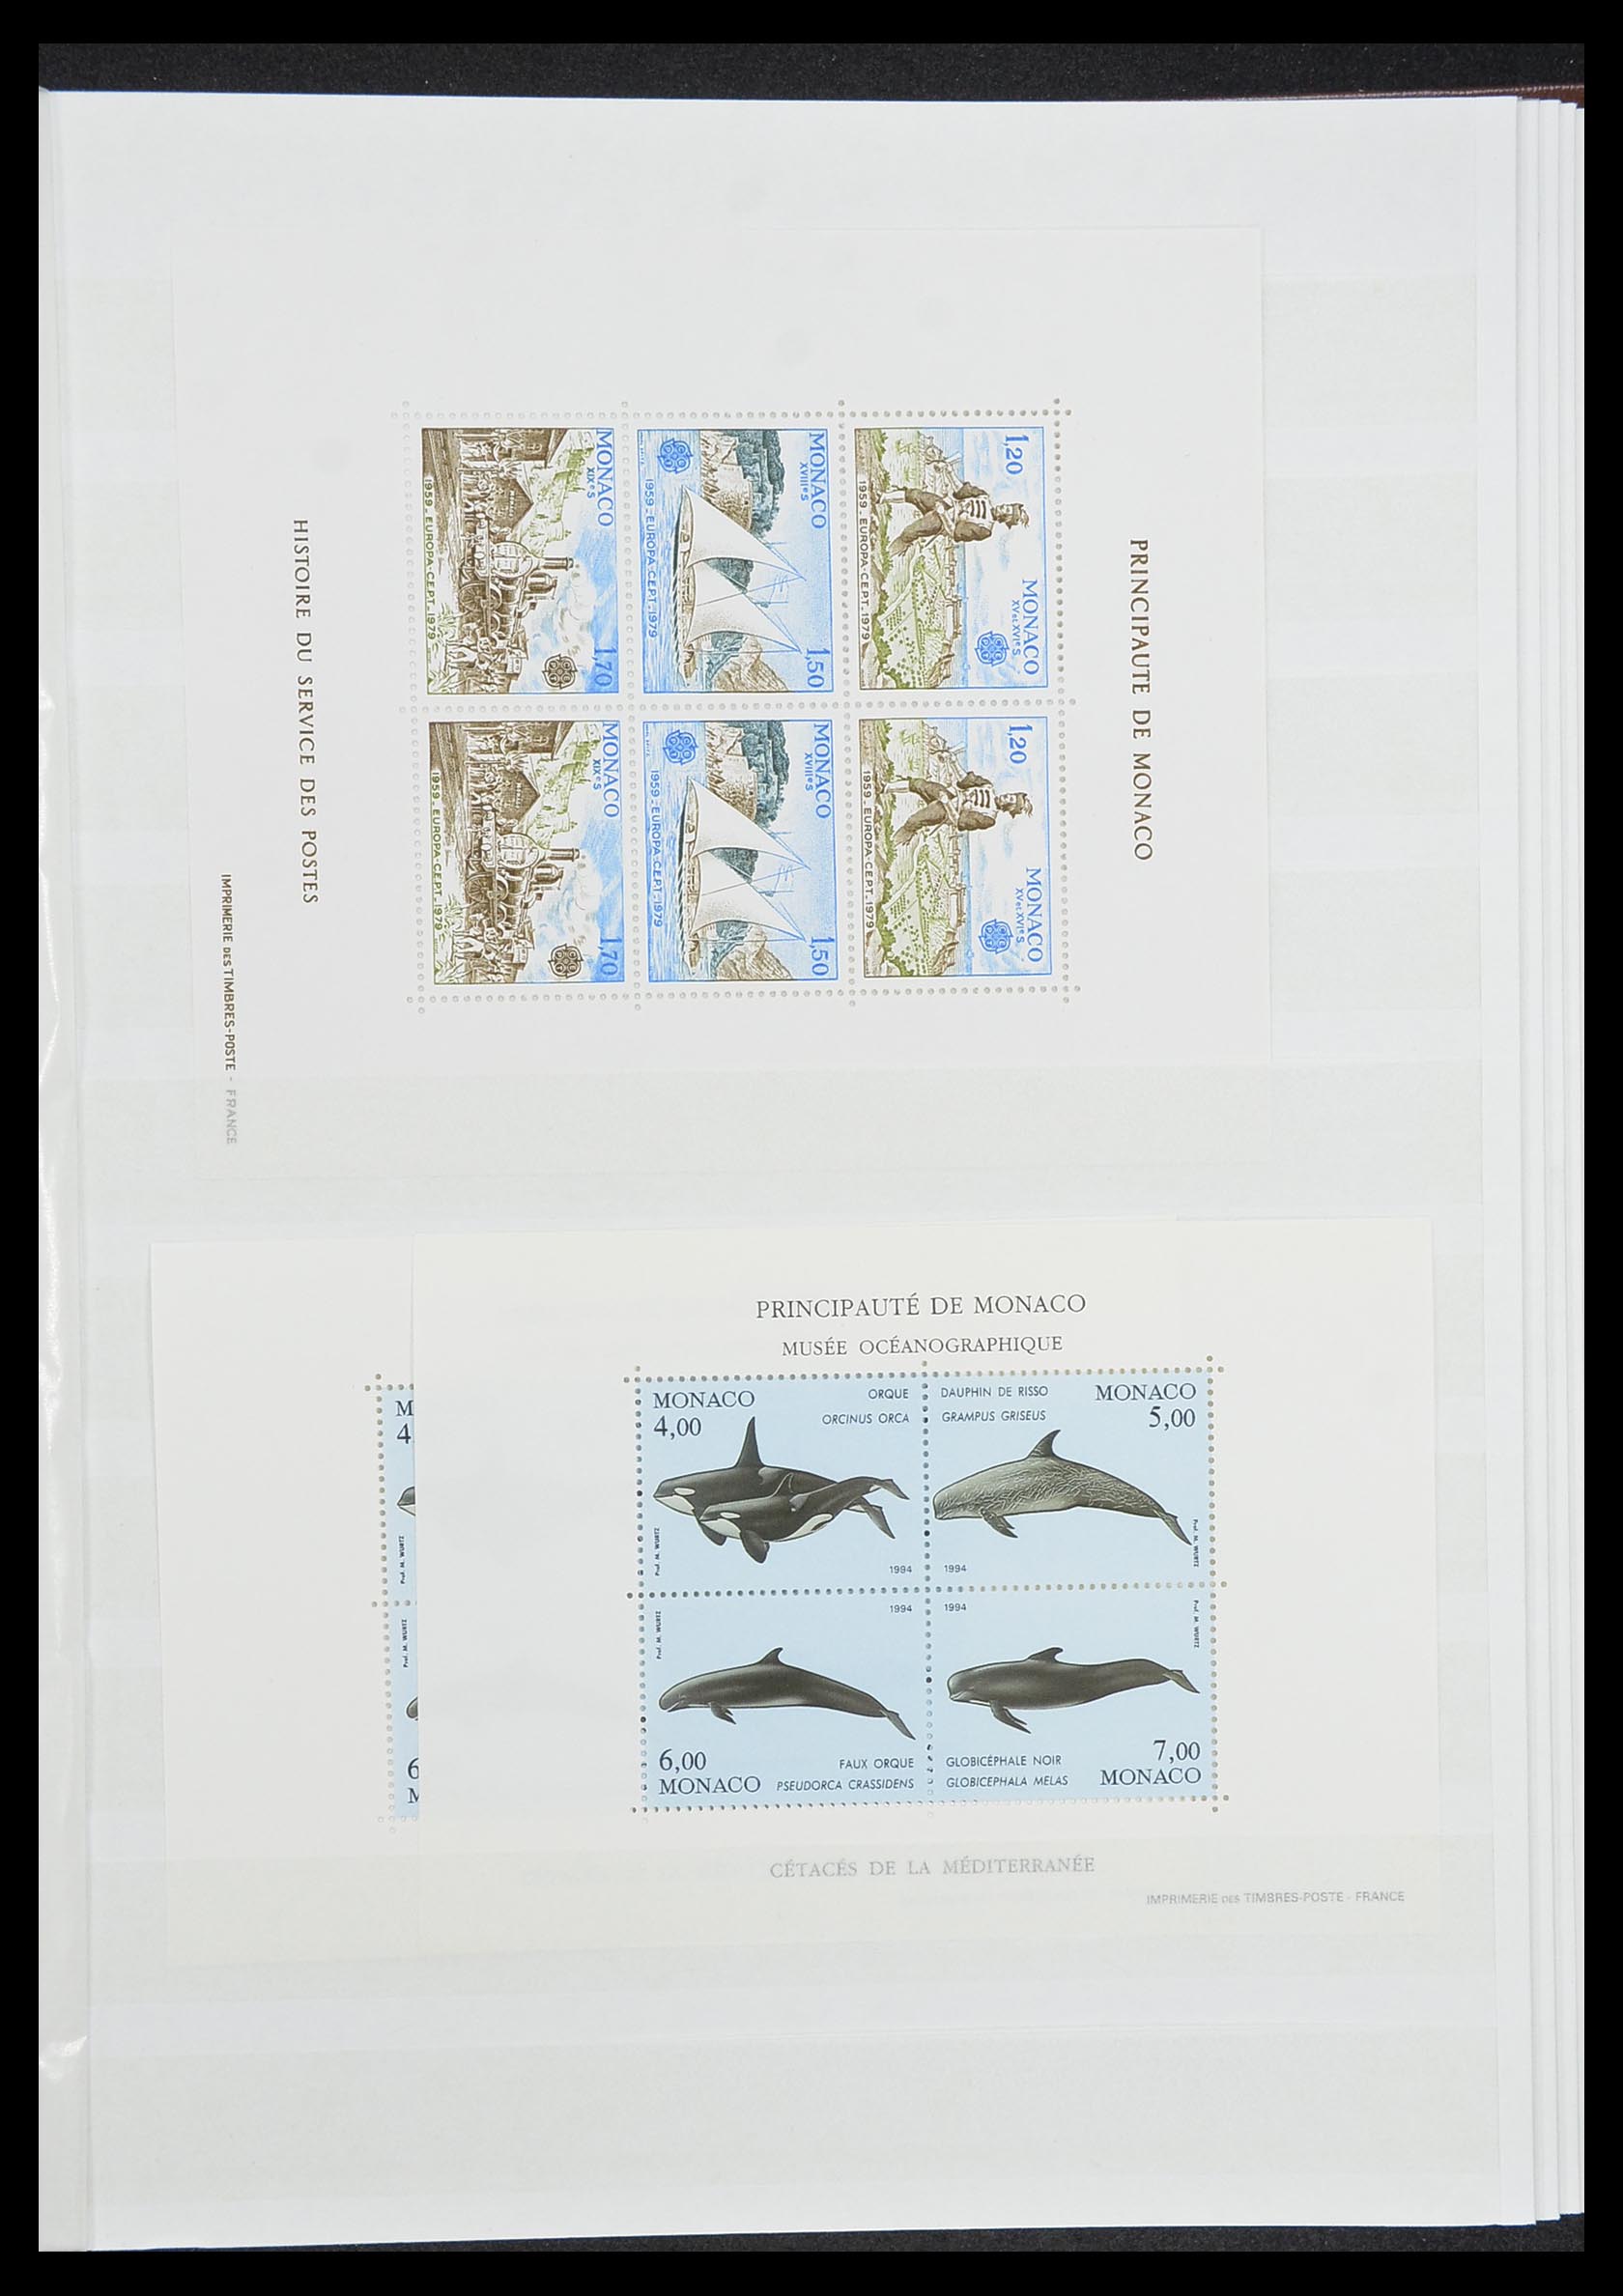 33833 031 - Stamp collection 33833 Monaco souvenir sheets 1979-2015.